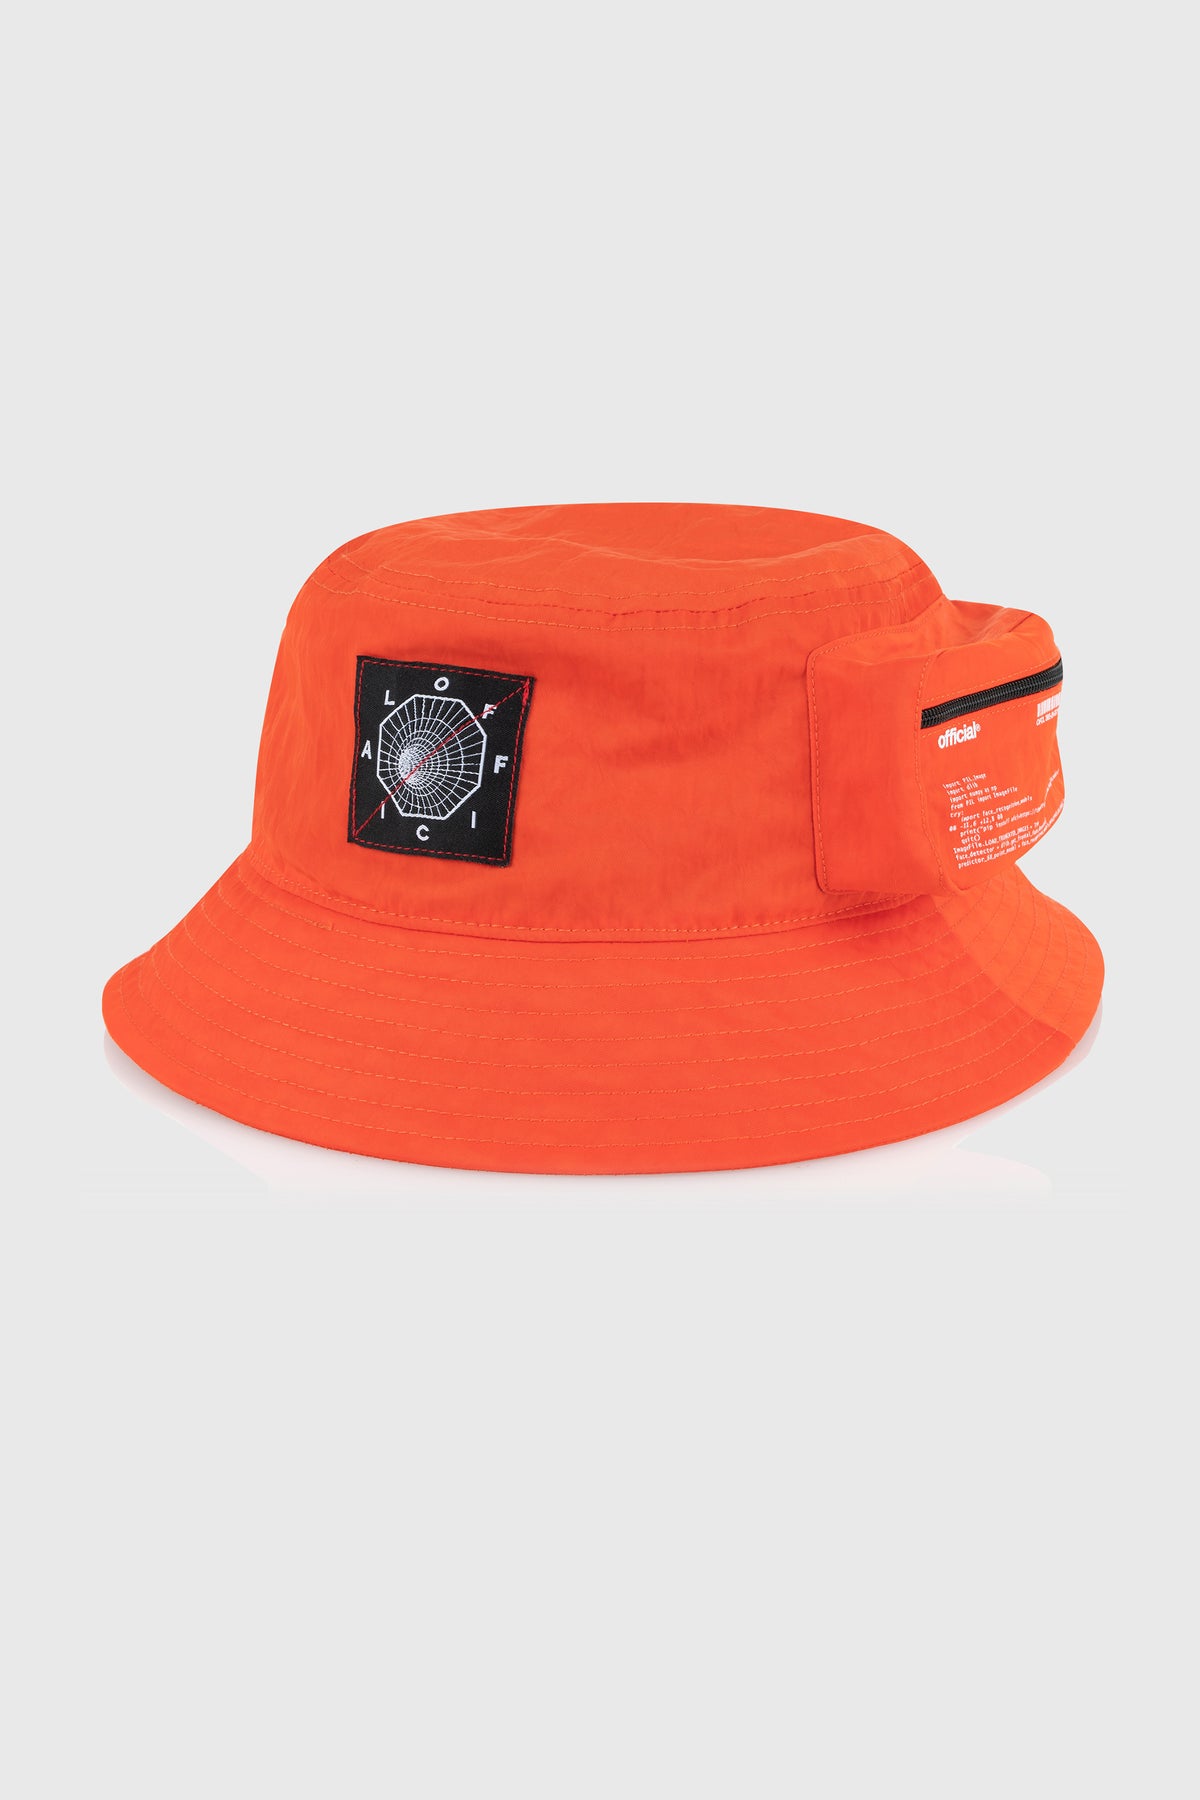 Bio-Tracker Cargo Bucket Hat (Orange) Official Brand The –